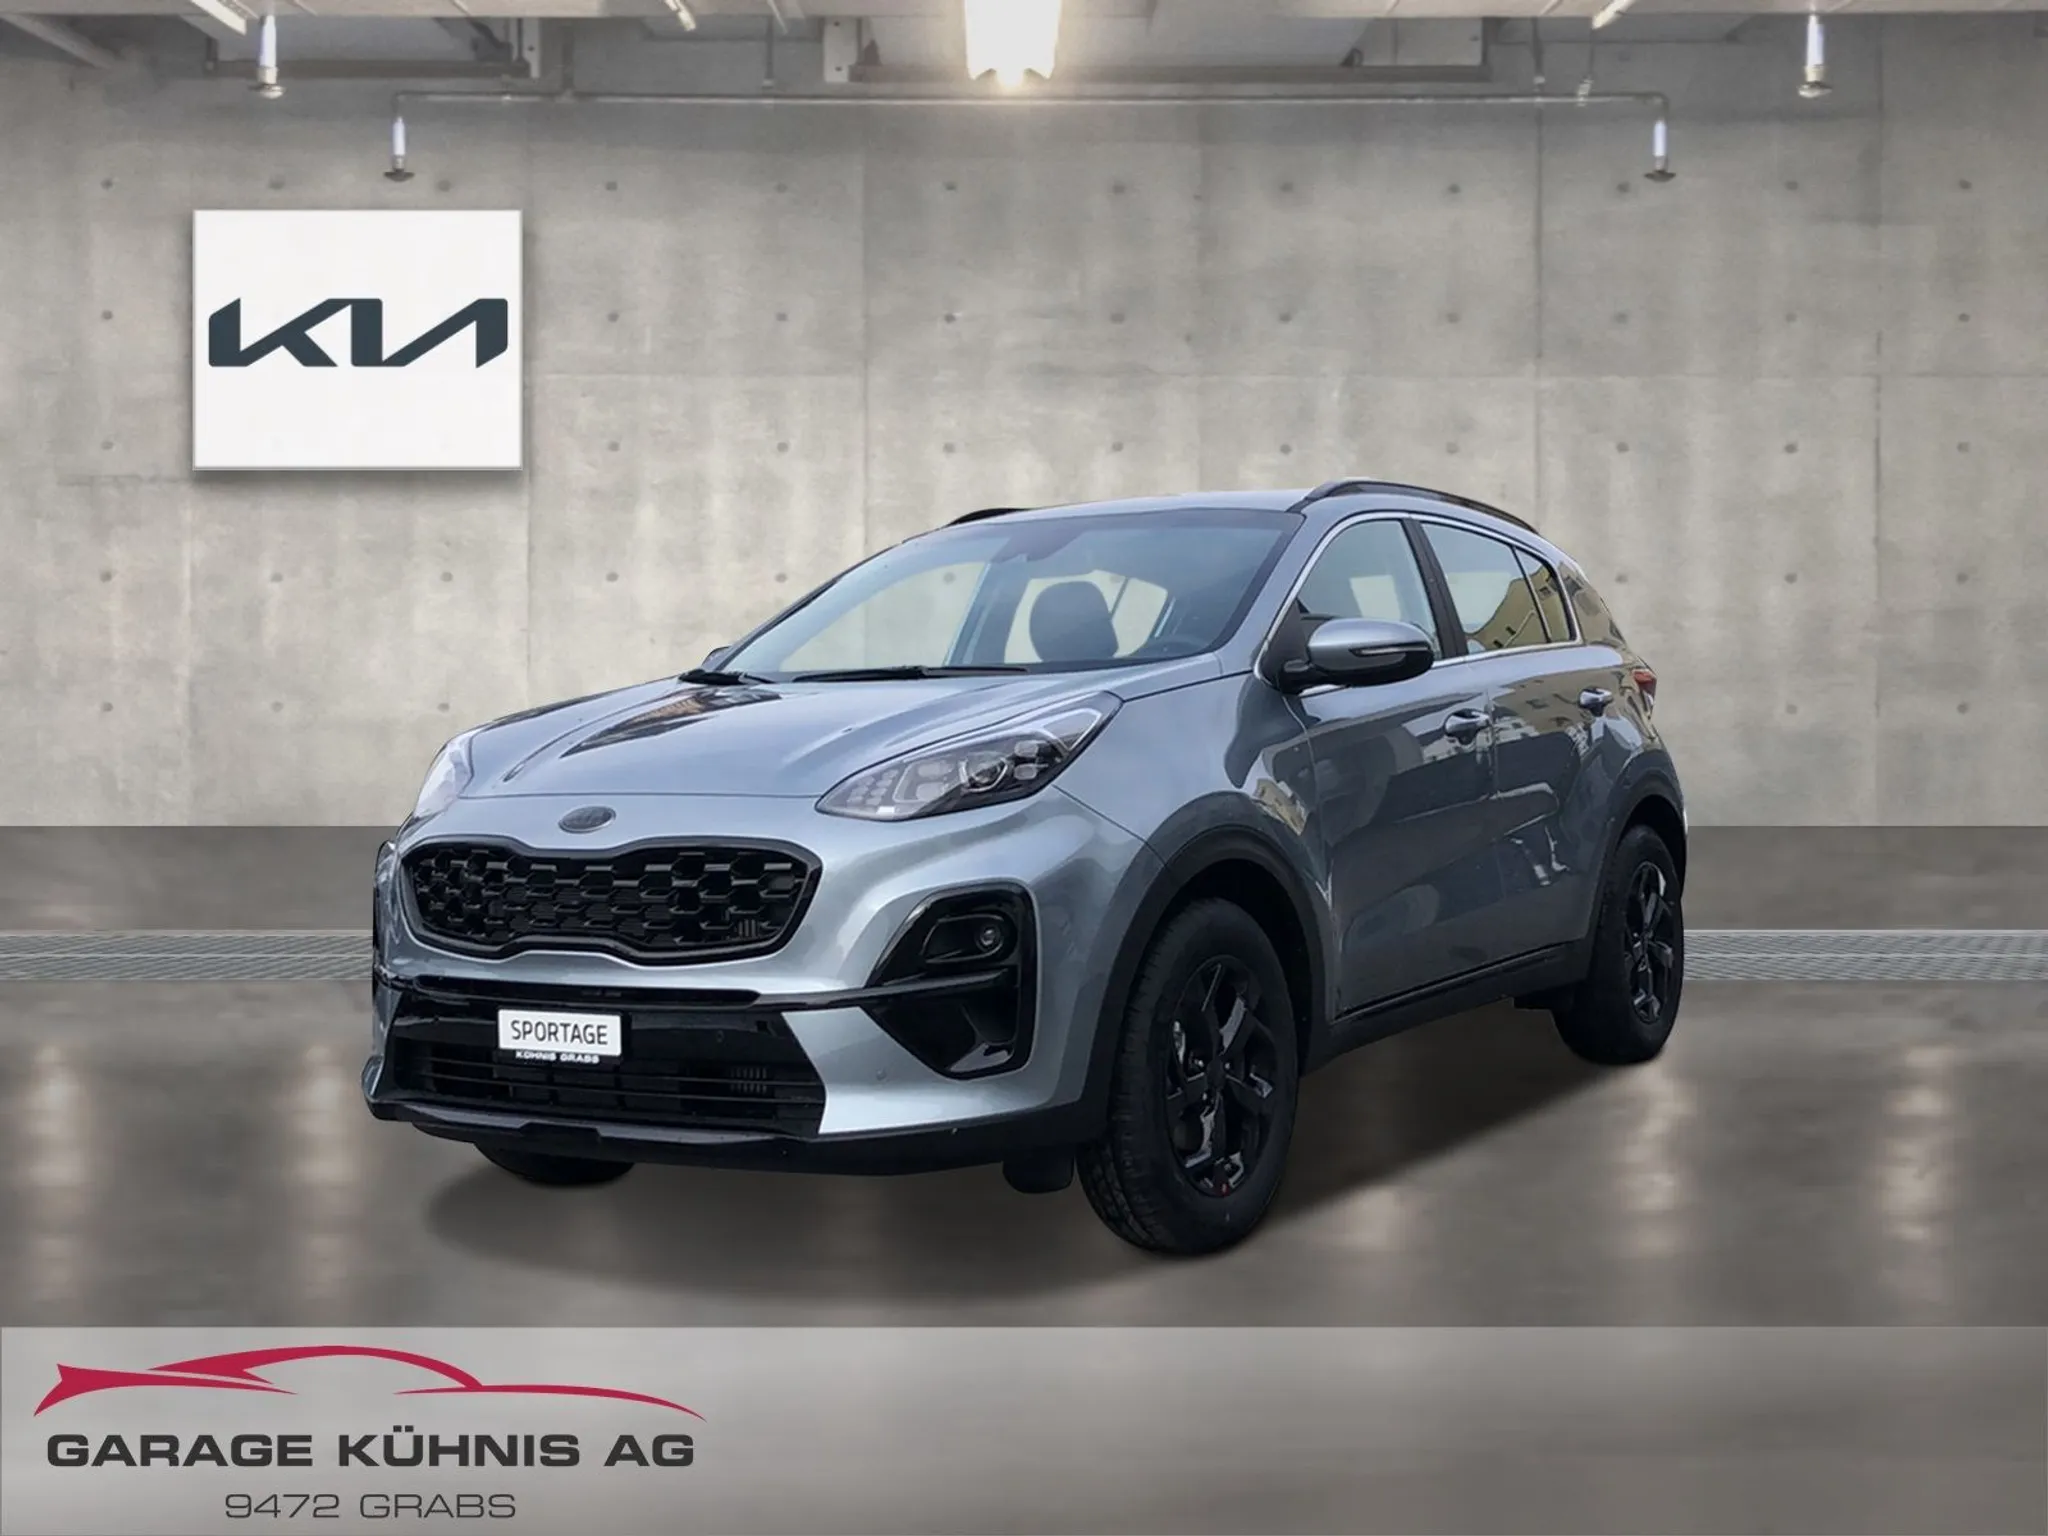 KIA-Sportage-car-image